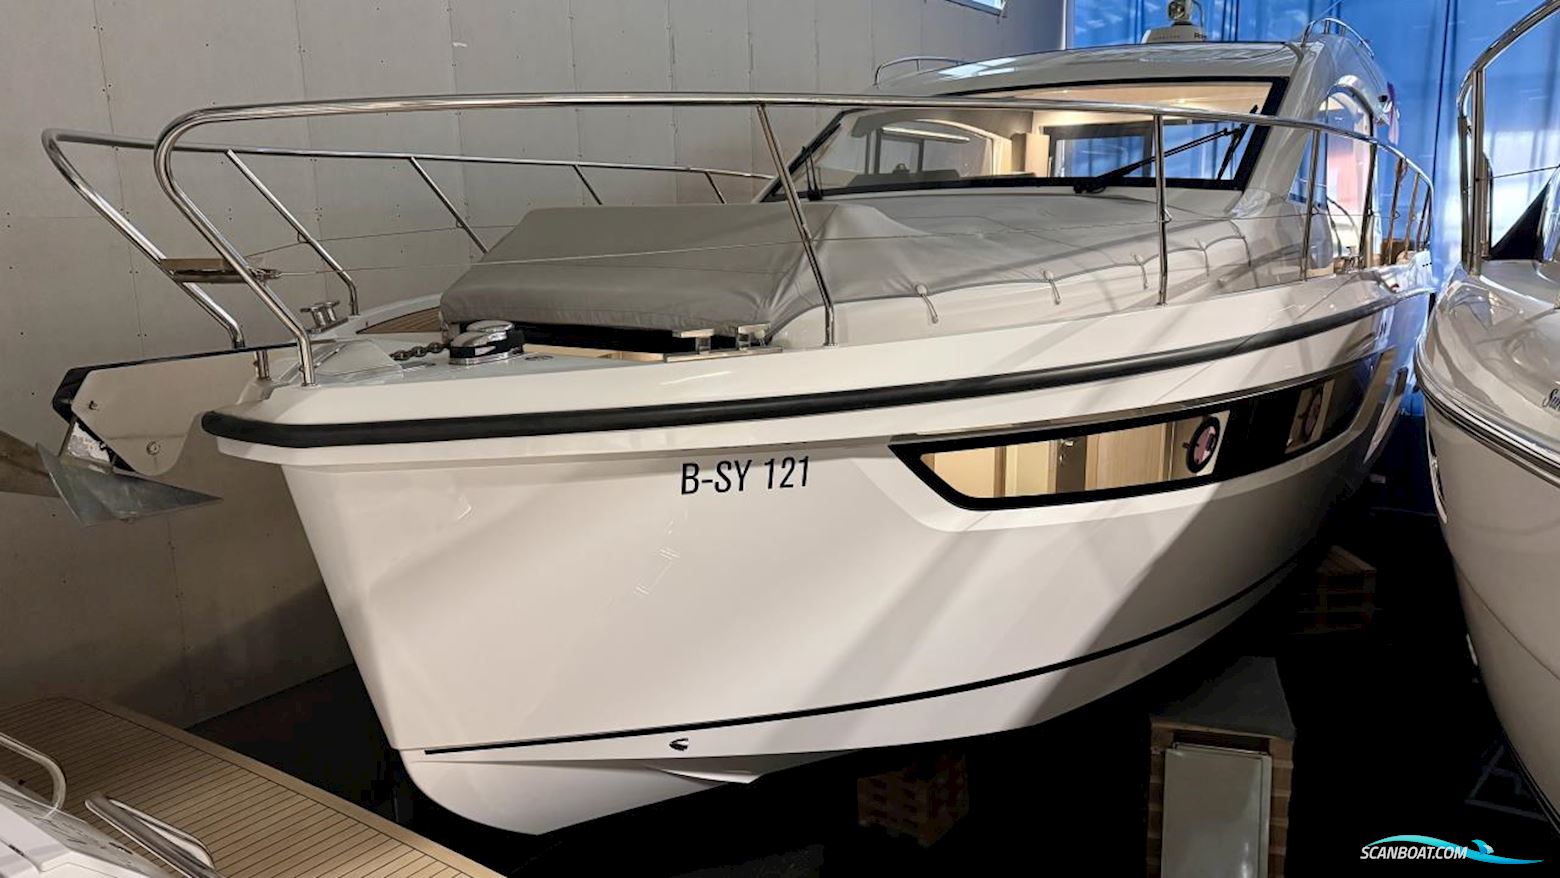 Sealine C390 Motorbåt 2020, med Volvo Penta motor, Sverige